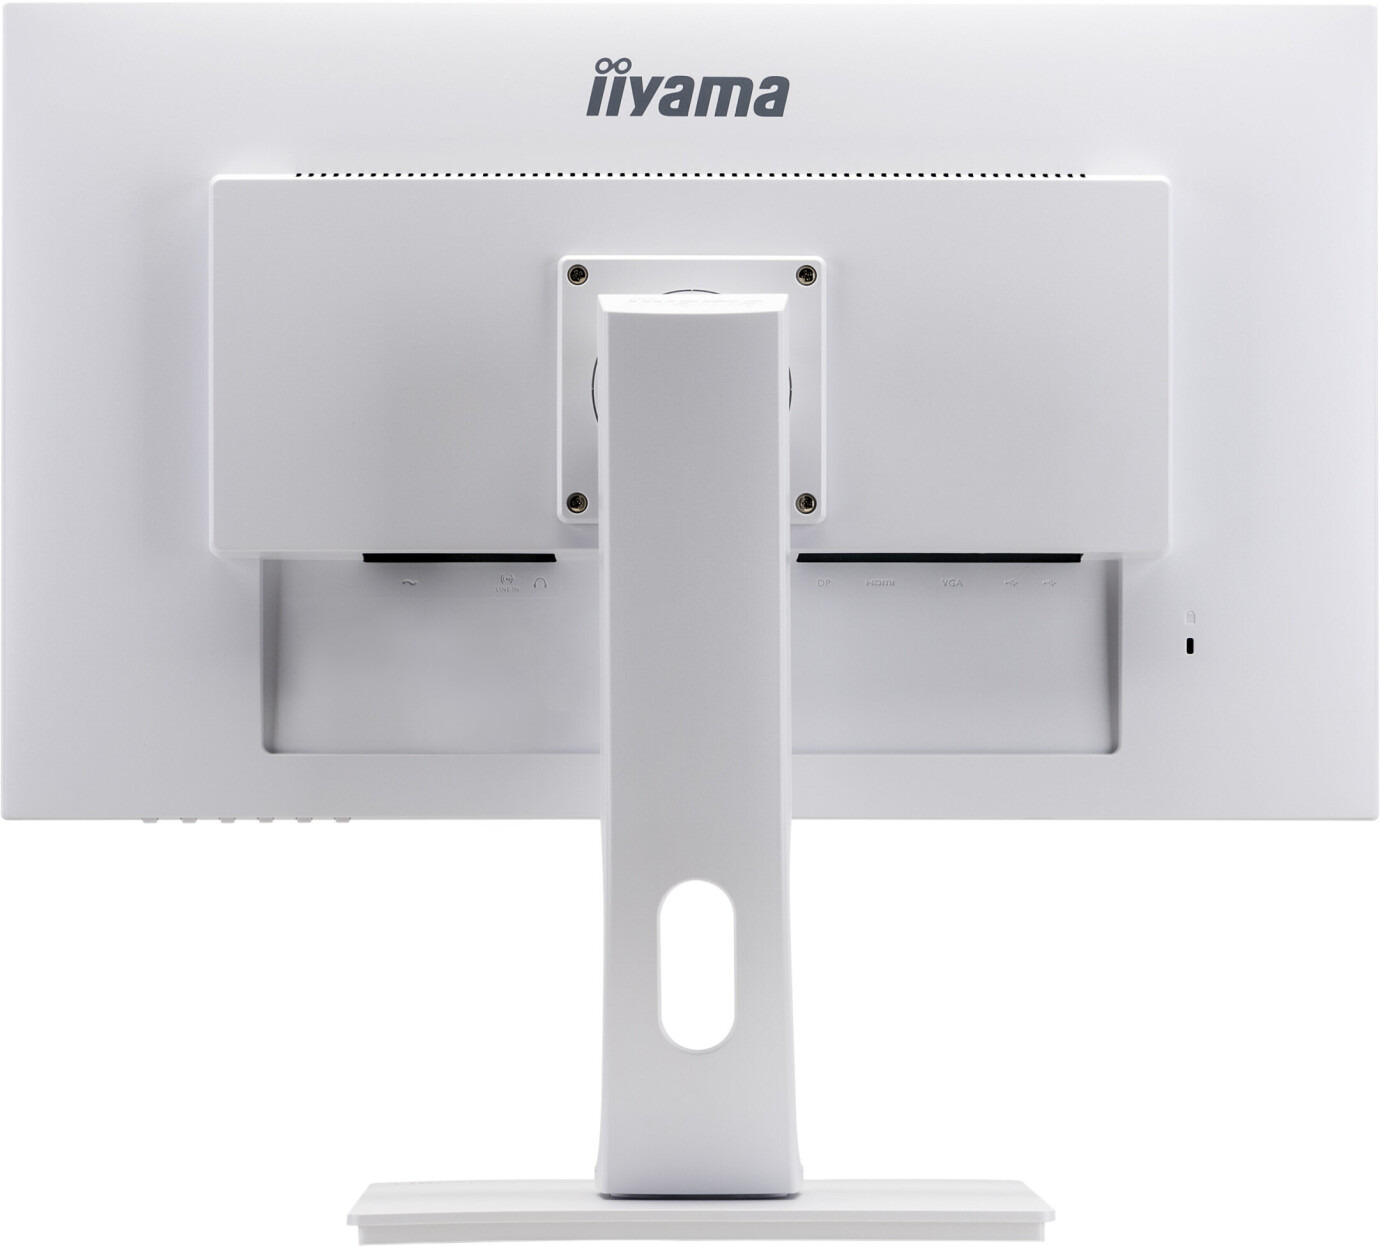 Vorschau: iiyama PROLITE XUB2792HSU-W1 27'' Businessmonitor mit Full-HD Auflösung